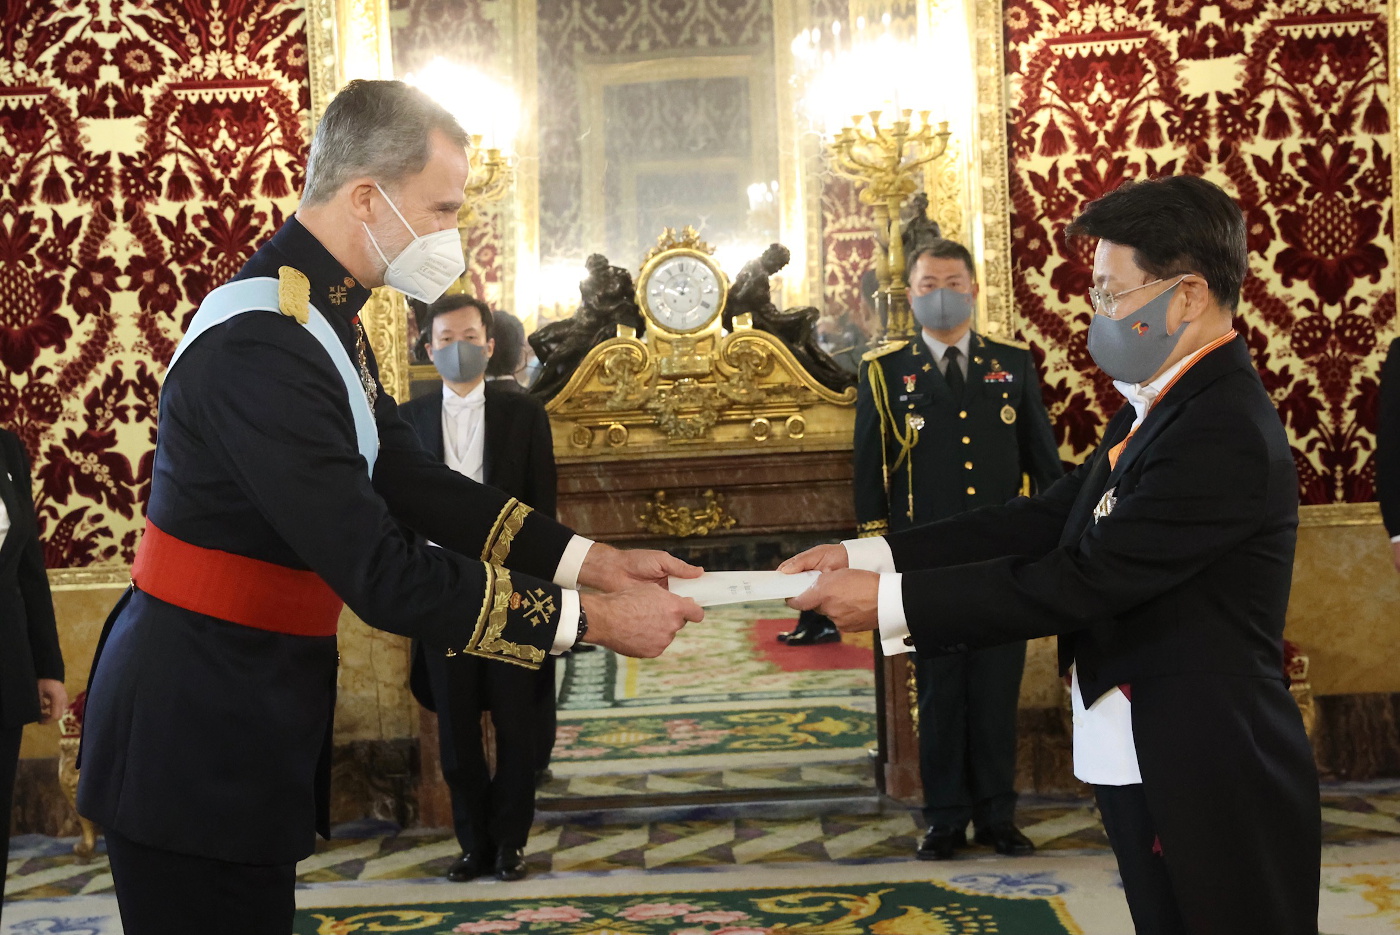 Presentación de las cartas credenciales, ceremonia de gran belleza y solemnidad del protocolo español